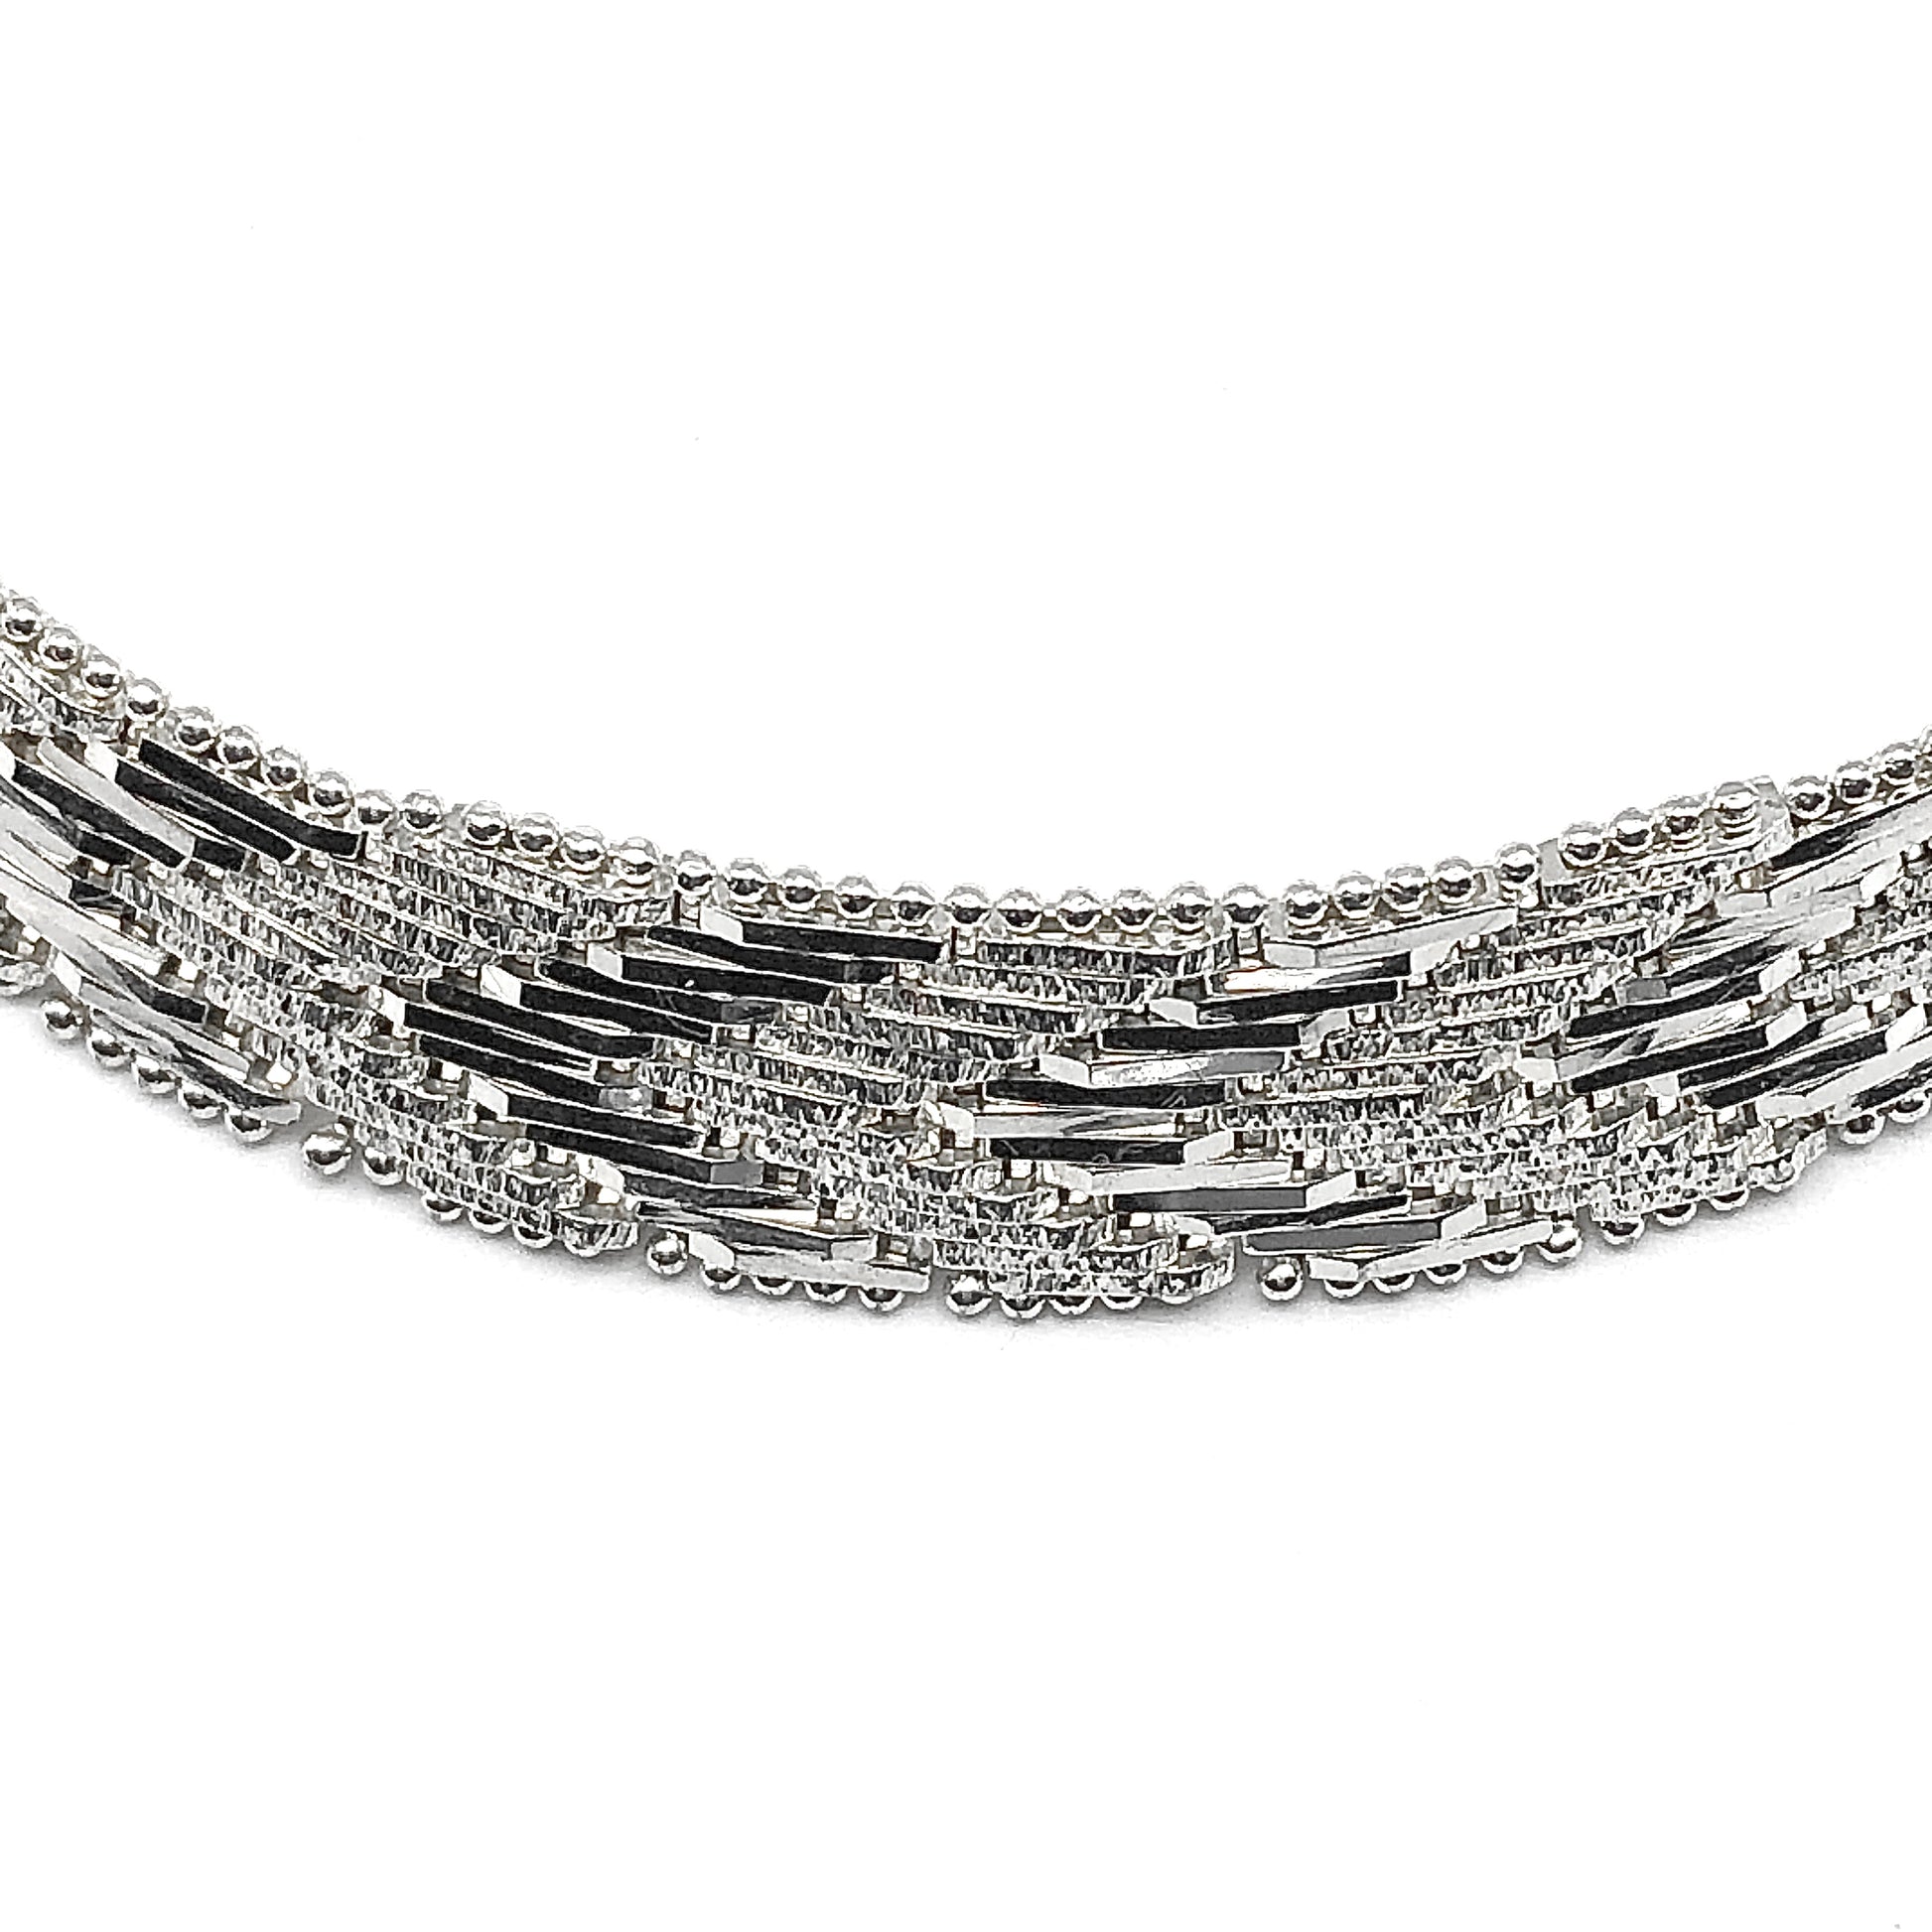 Necklace Sterling Silver Riccio Chevron Herringbone Choker Collar